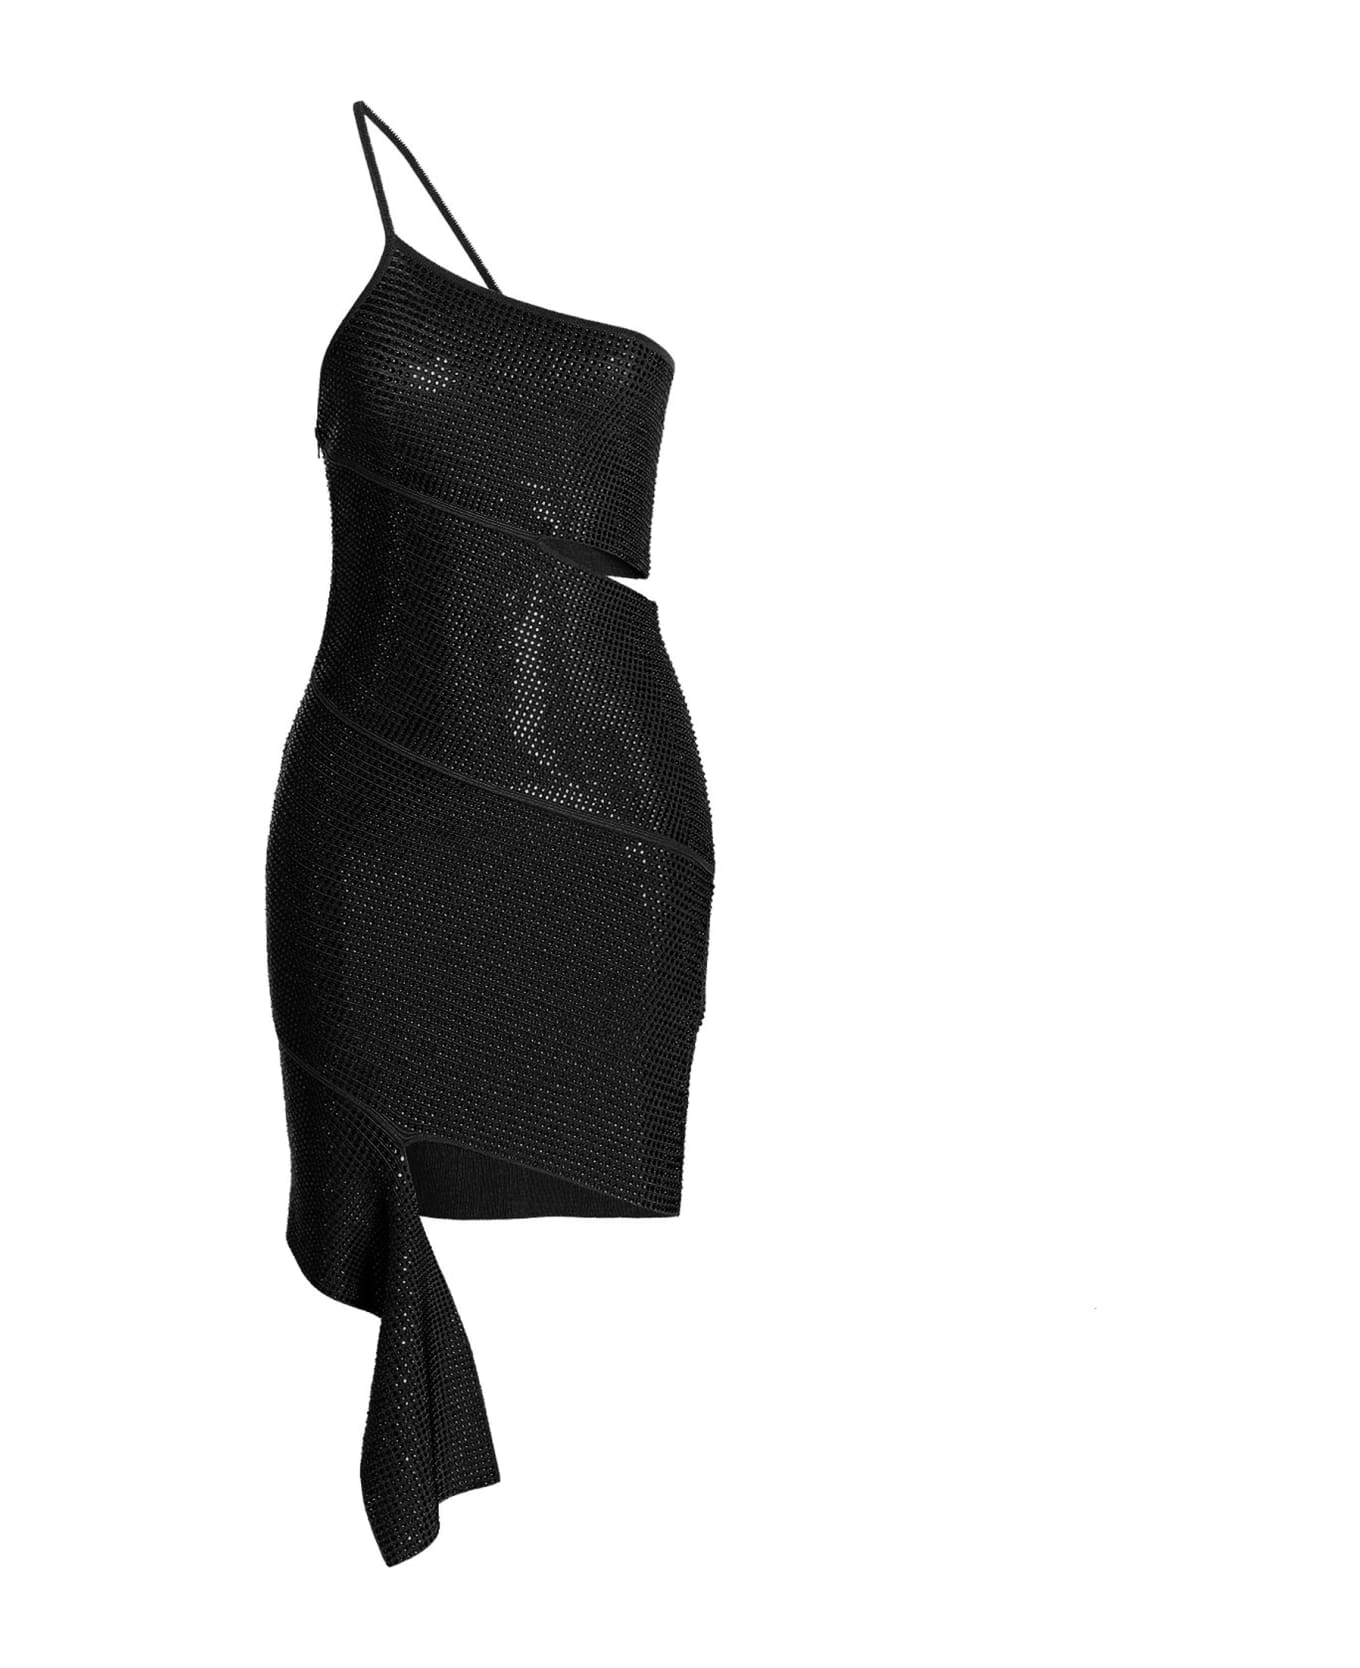 ANDREĀDAMO Sequin One Shoulder Dress - Black  